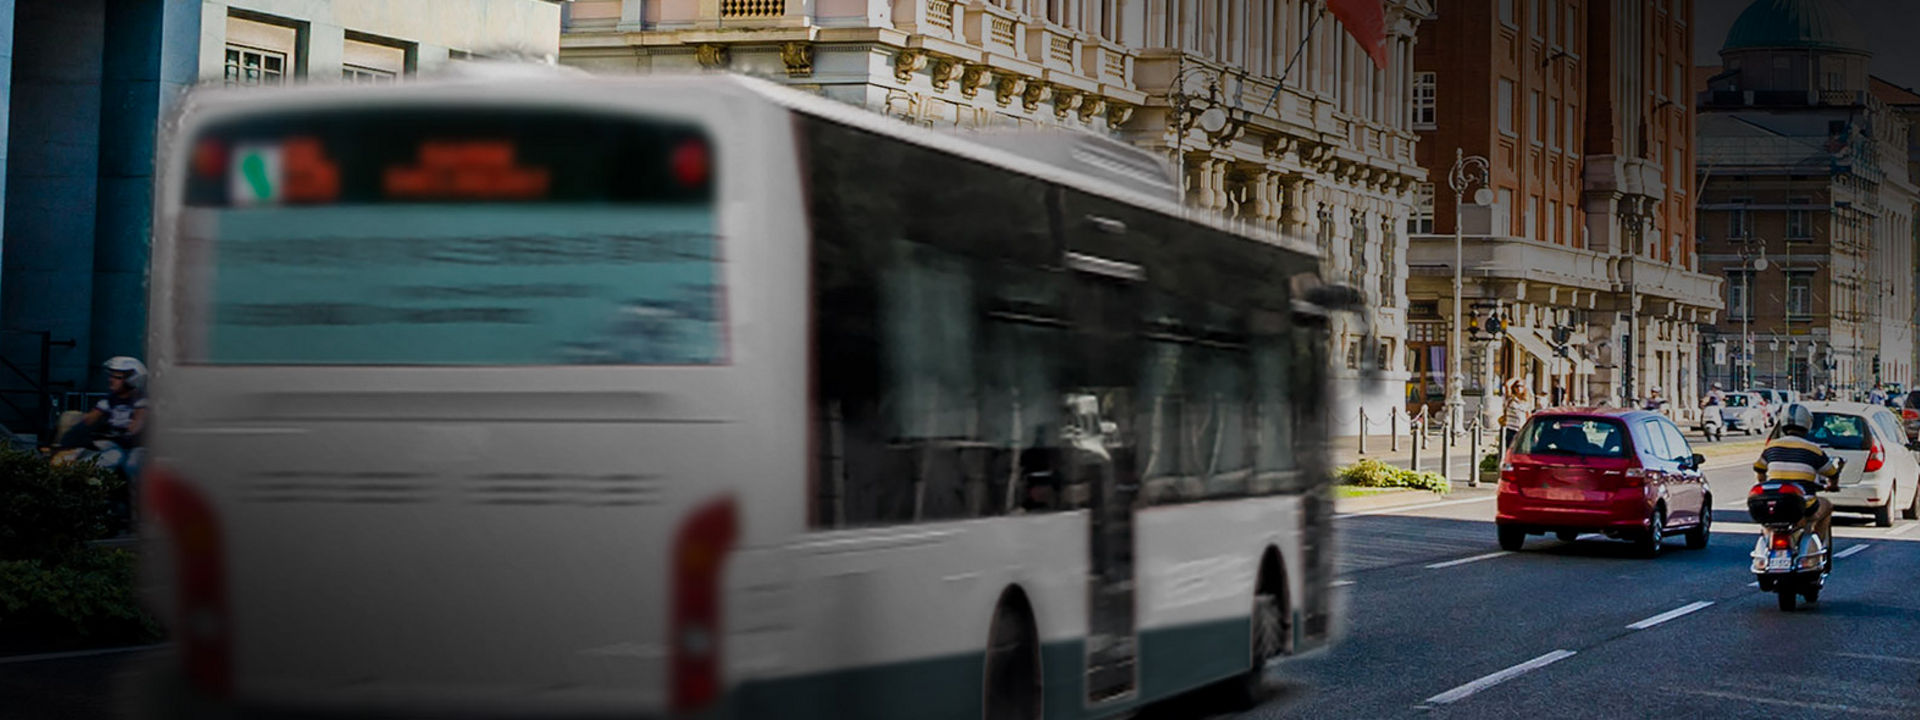 Această imagine arată partea din spate a unui autobuz urban cu anvelope Bridgestone pentru autobuze urbane, care circulă în centrul orașului.